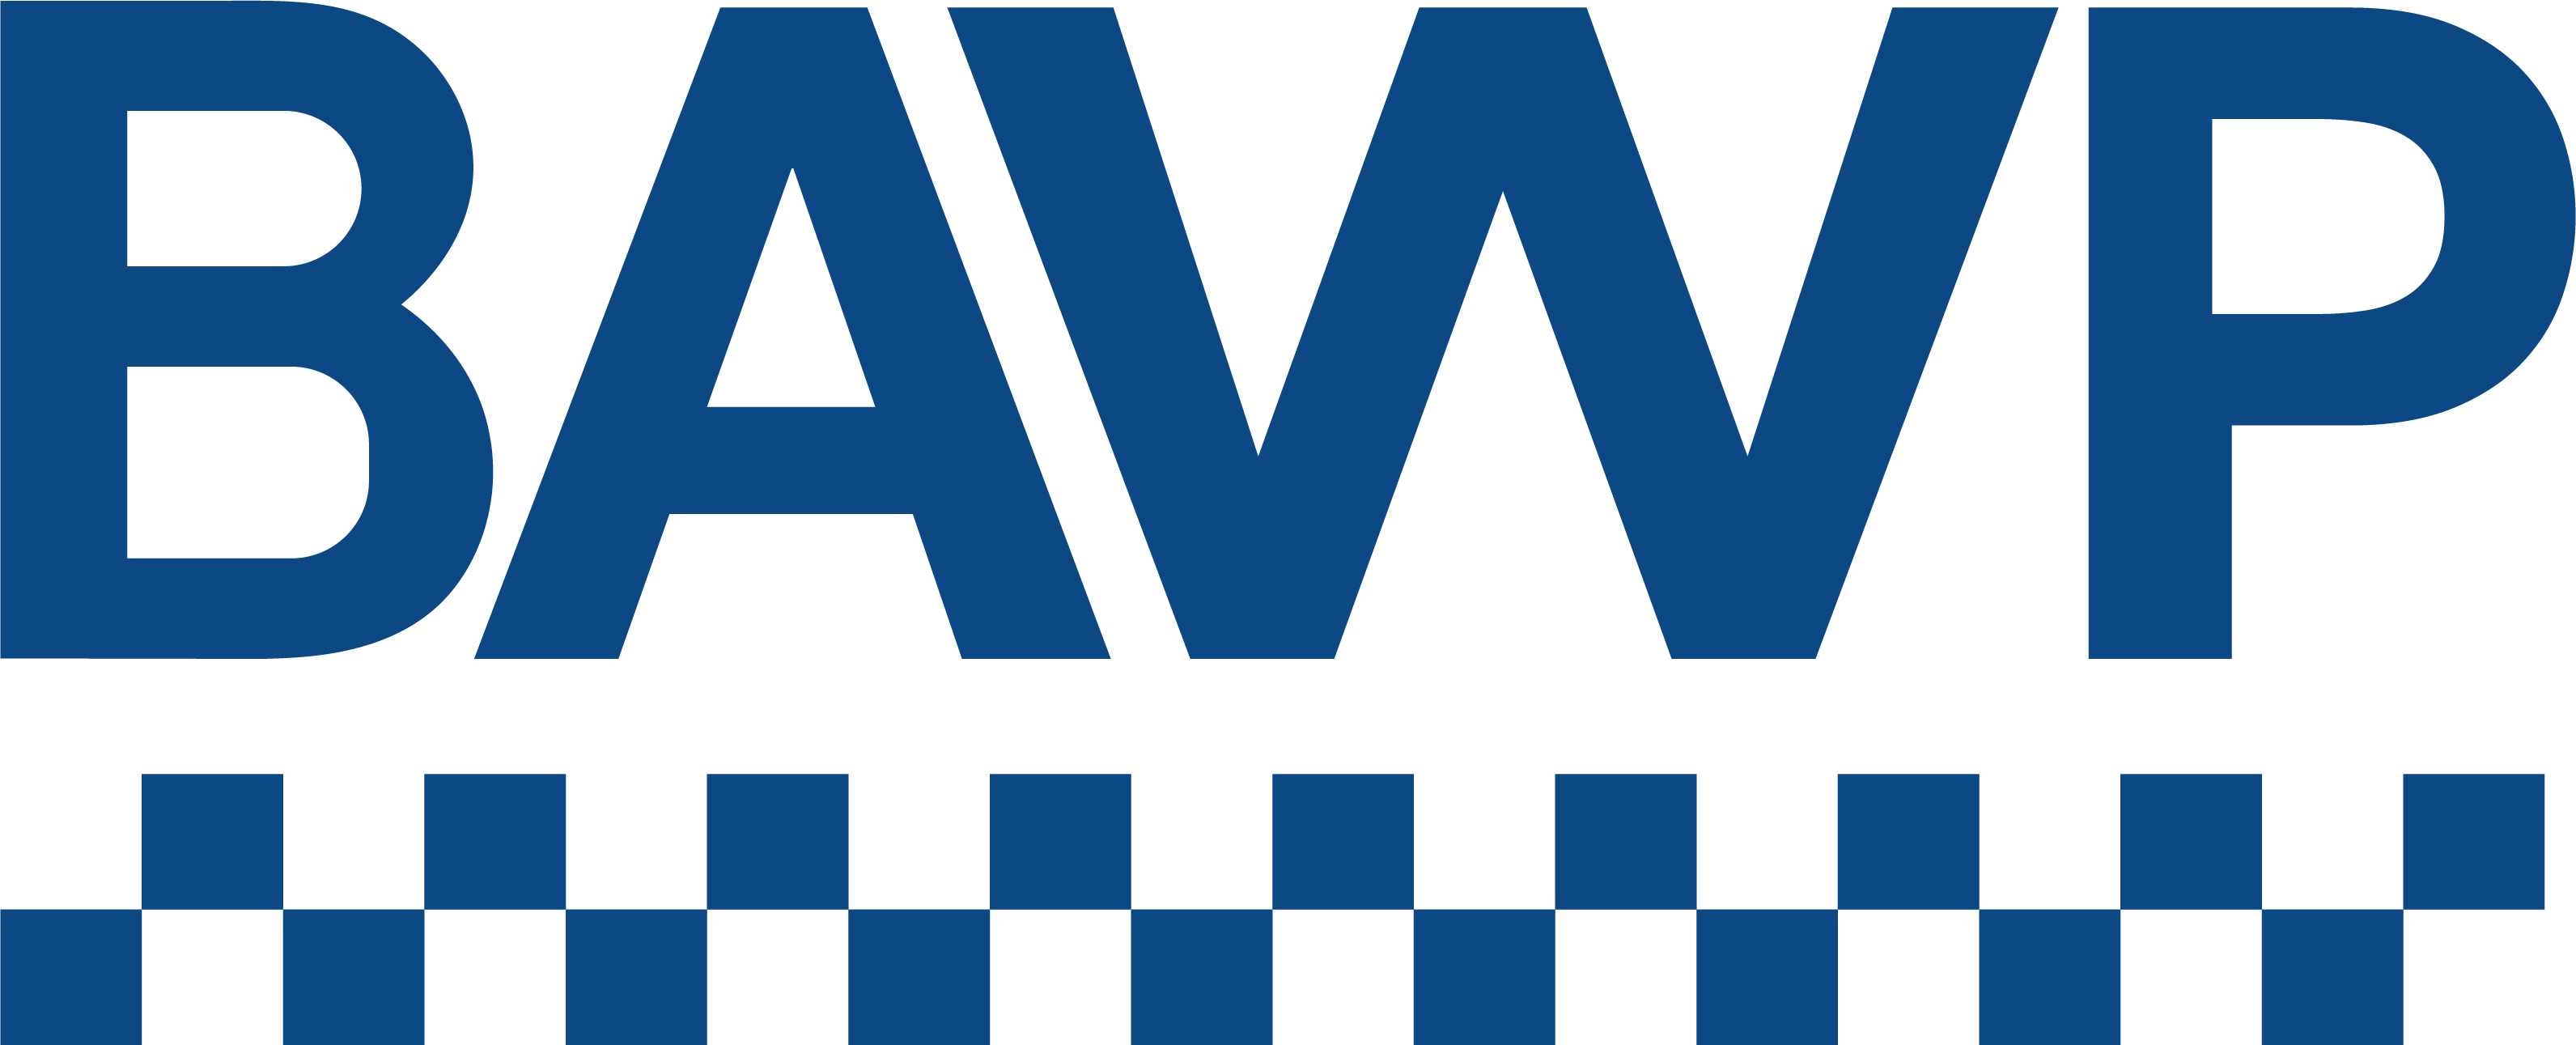 BAWP logo.